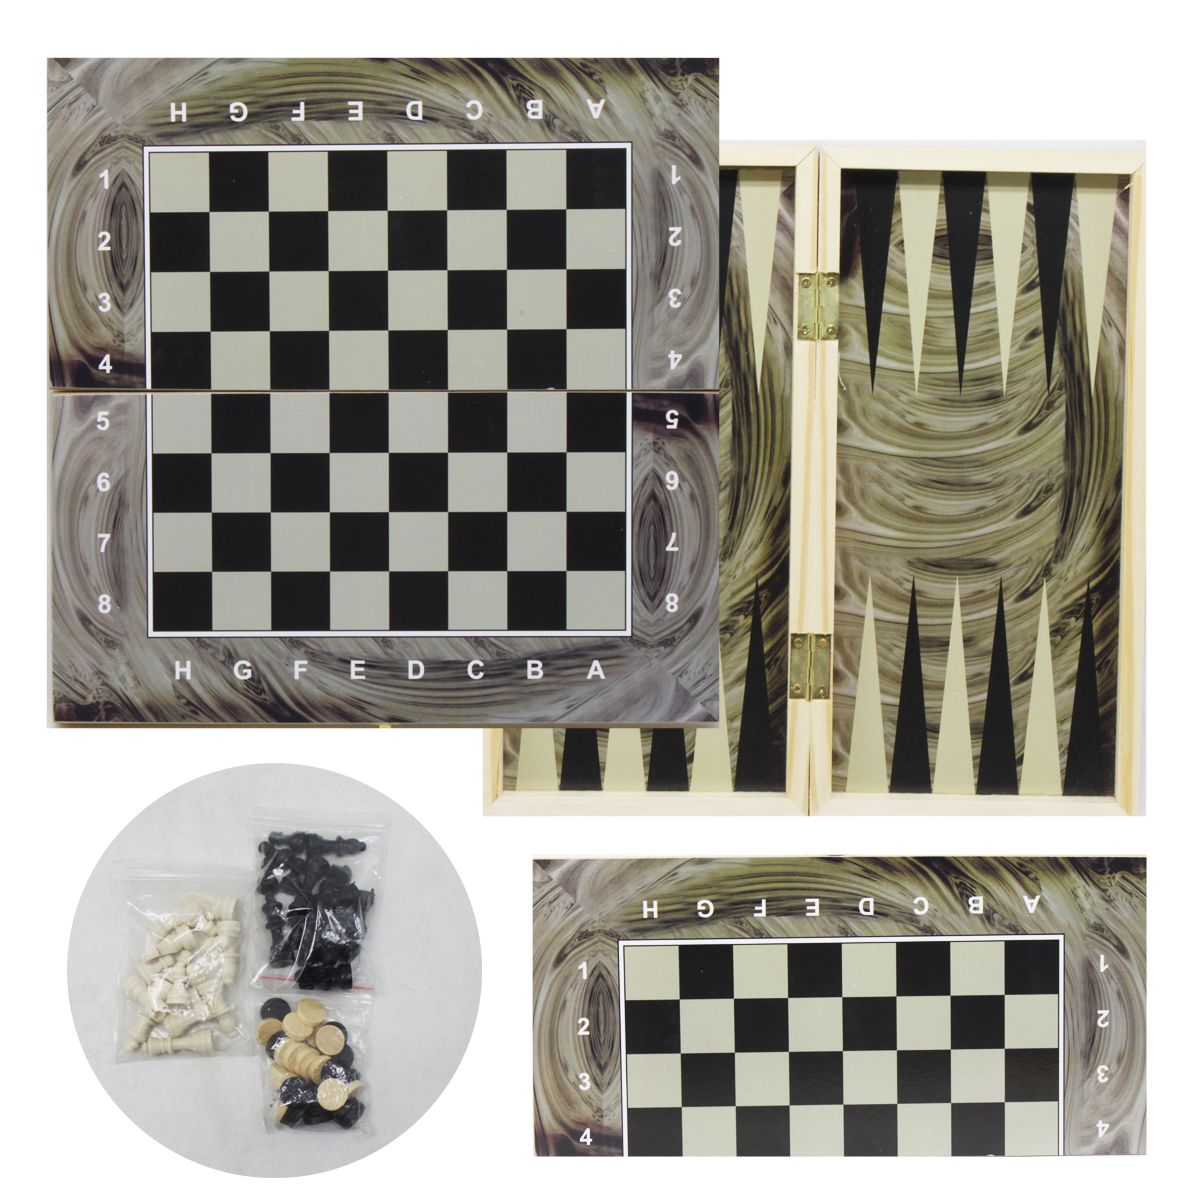 Гра 2 в 1 (шахи і нарди) на деревʼяній дошці